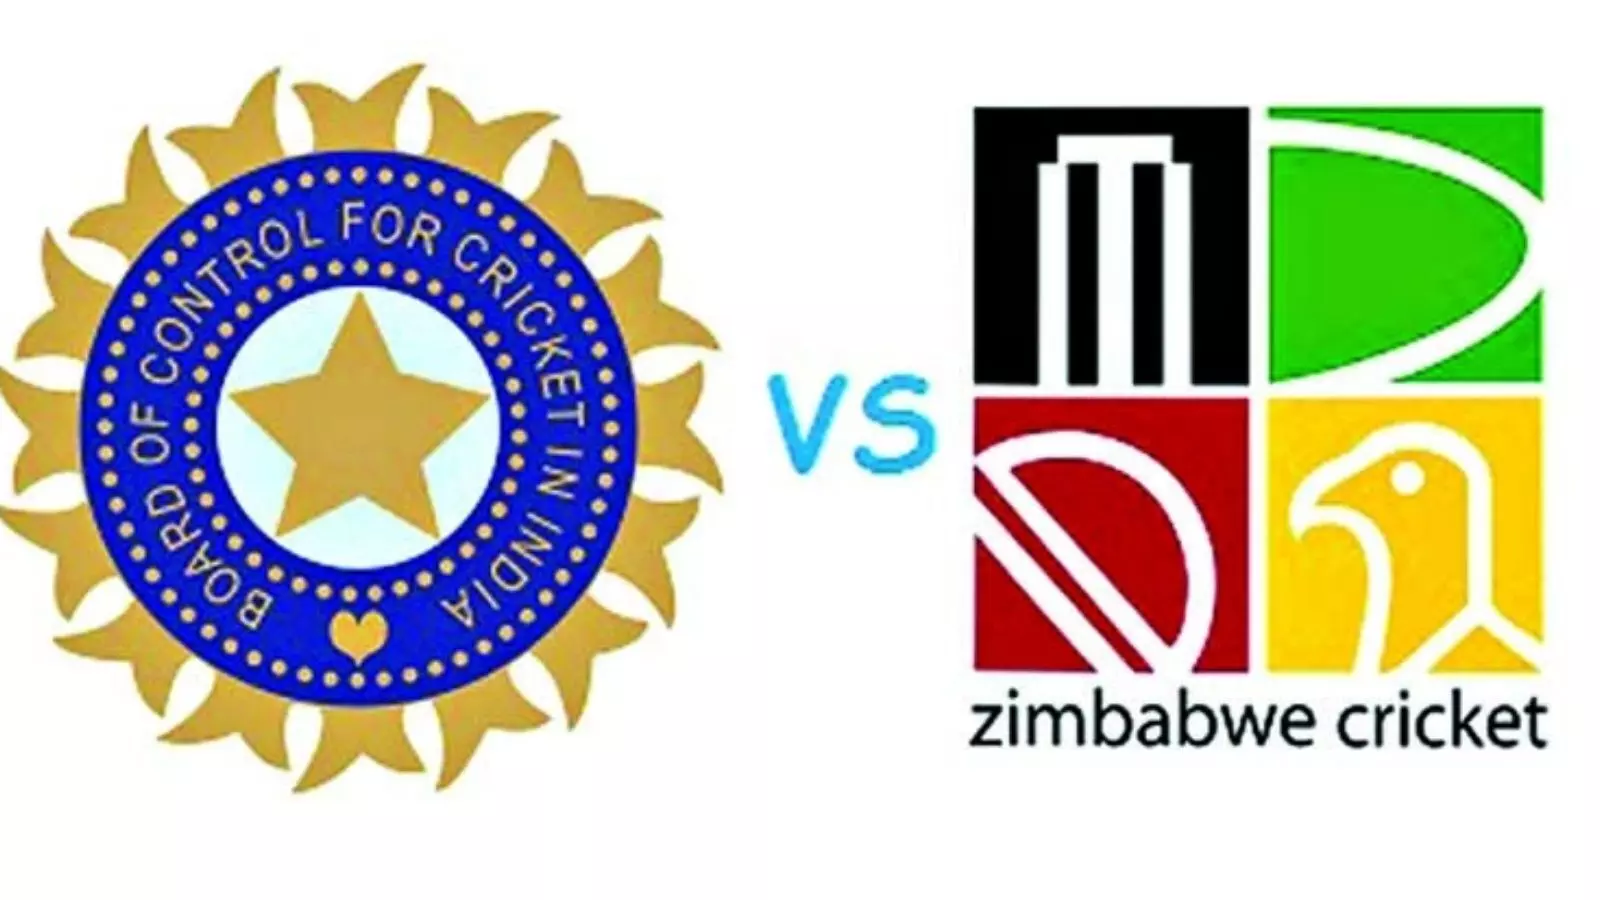 T20 सीरीज के लिए टीम इंडिया करेगी जिम्बाब्वे का दौरा, 6 जुलाई को खेला जाएगा पहला मैच